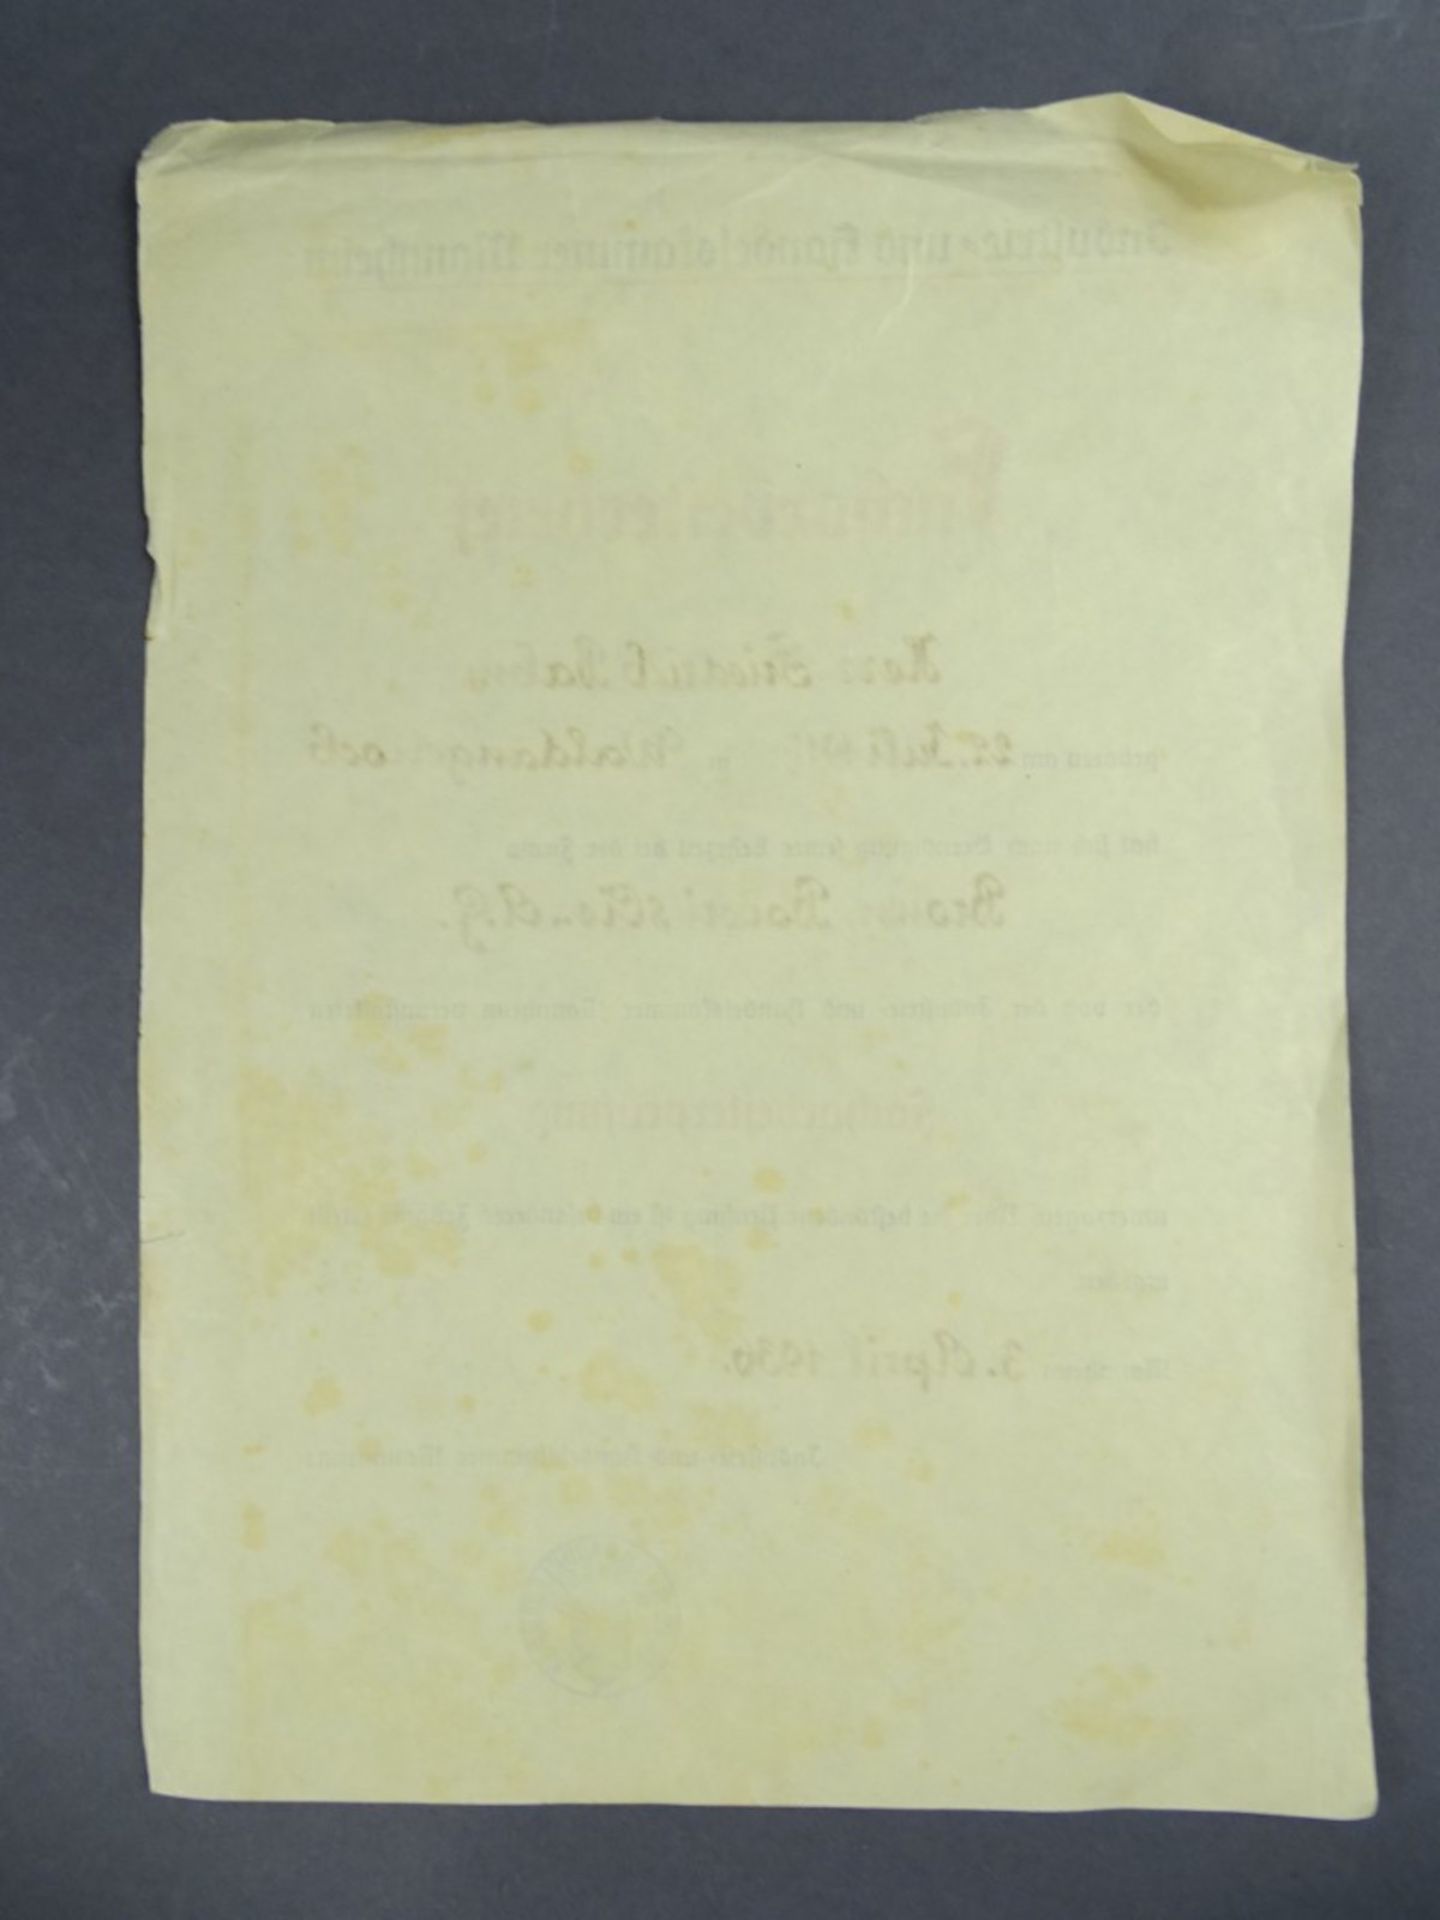 Facharbeiterbrief von 1936, Gilb sowie kleine Risse und Knicke vorhanden - Image 3 of 3